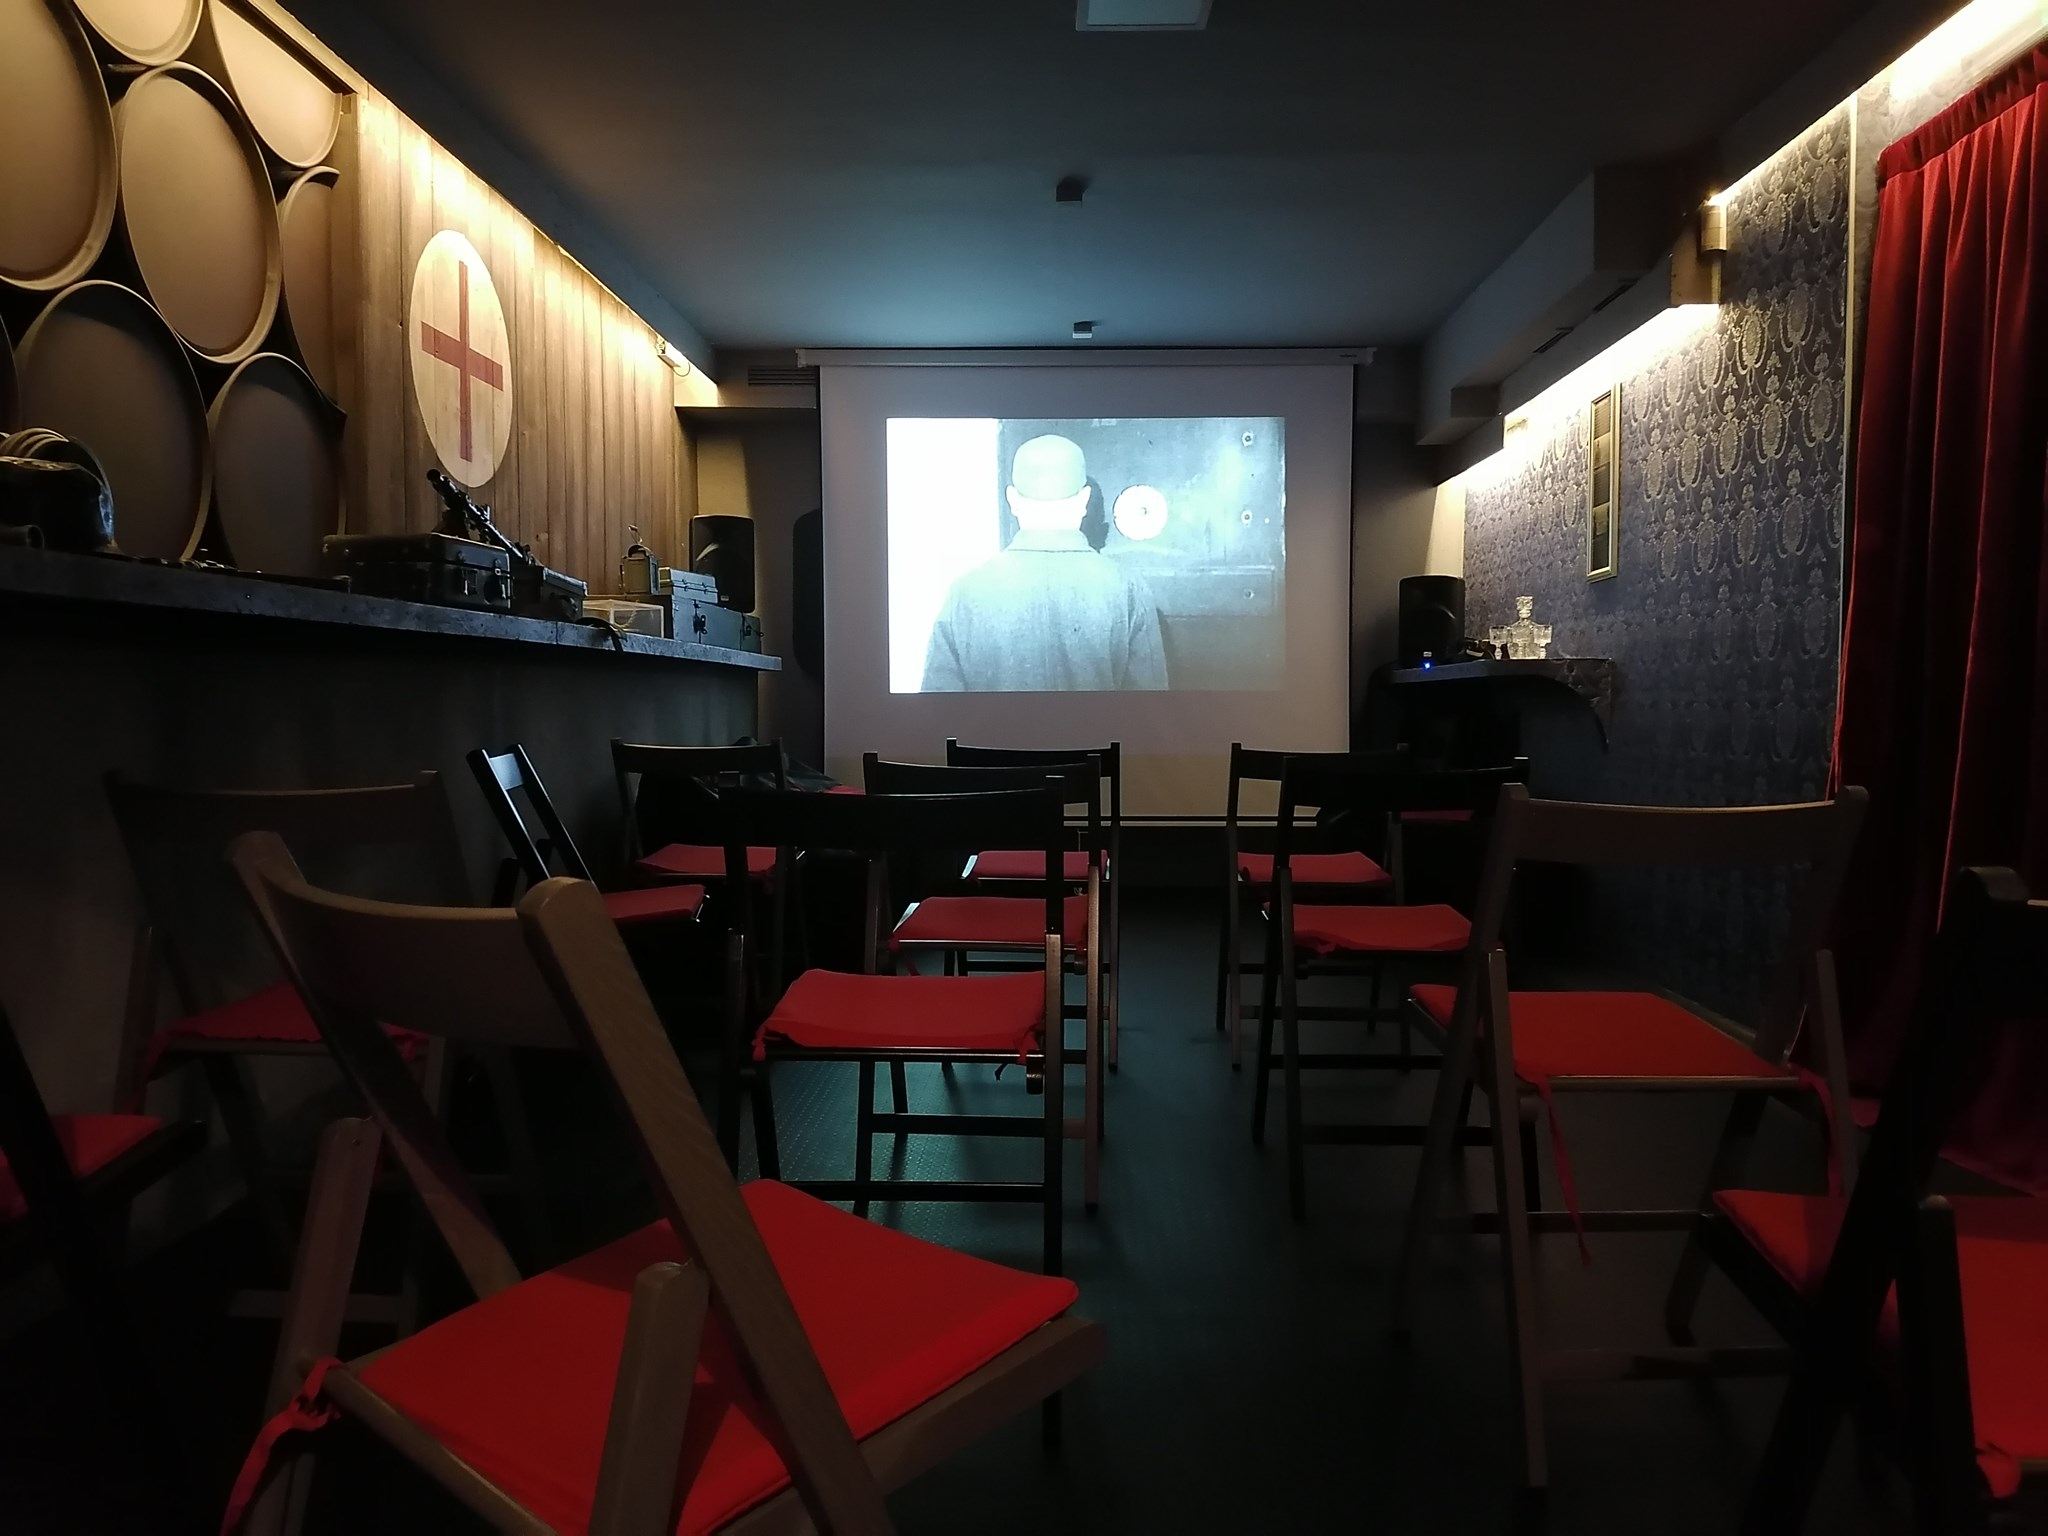  Besplatni filmovi: U Sarajevu se otvara kino Valter